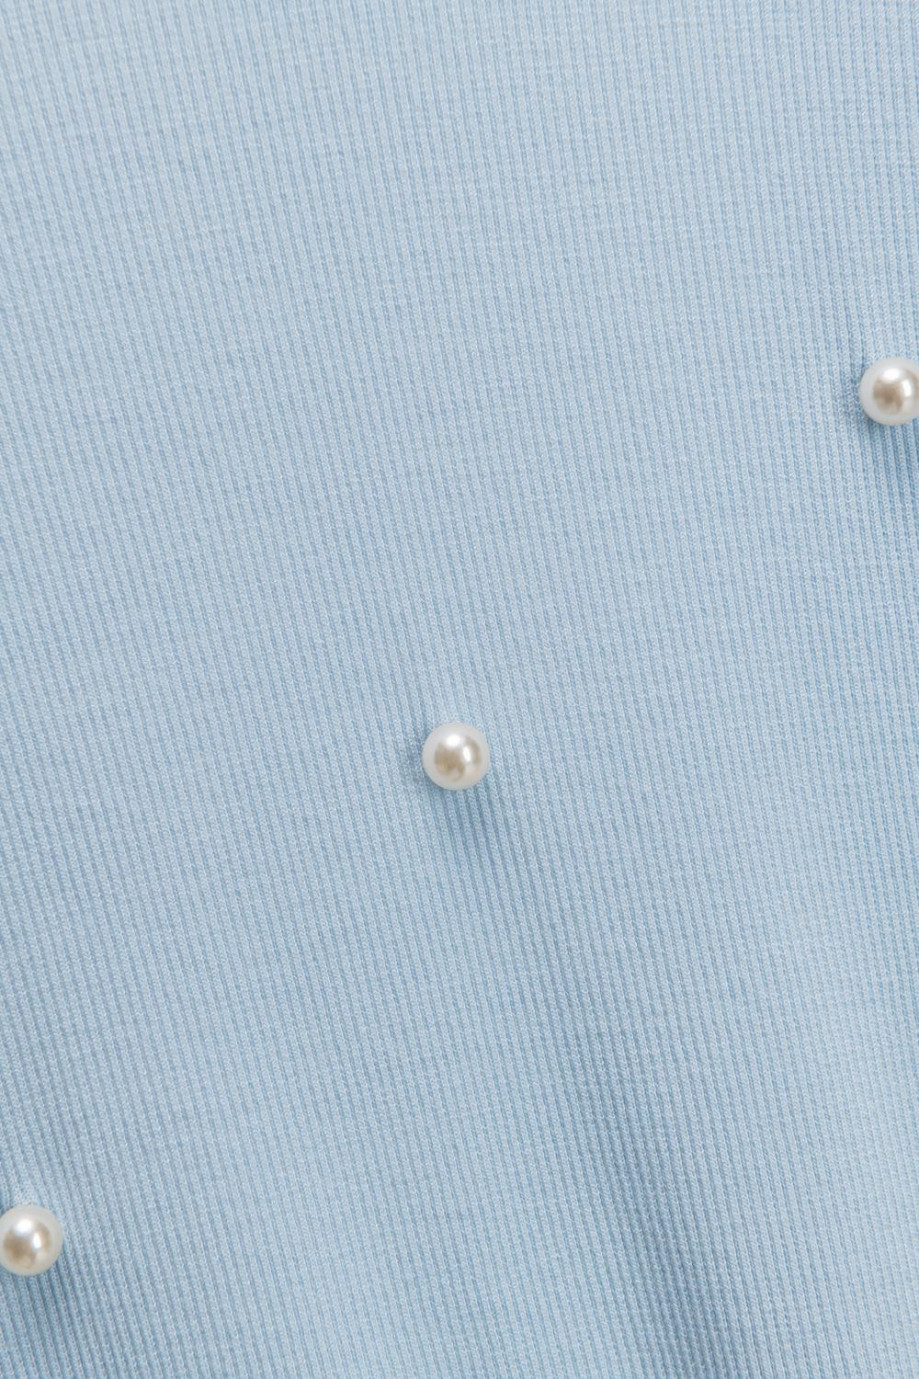 Camiseta manga larga unicolor con perlas, escote y anudado en espalda